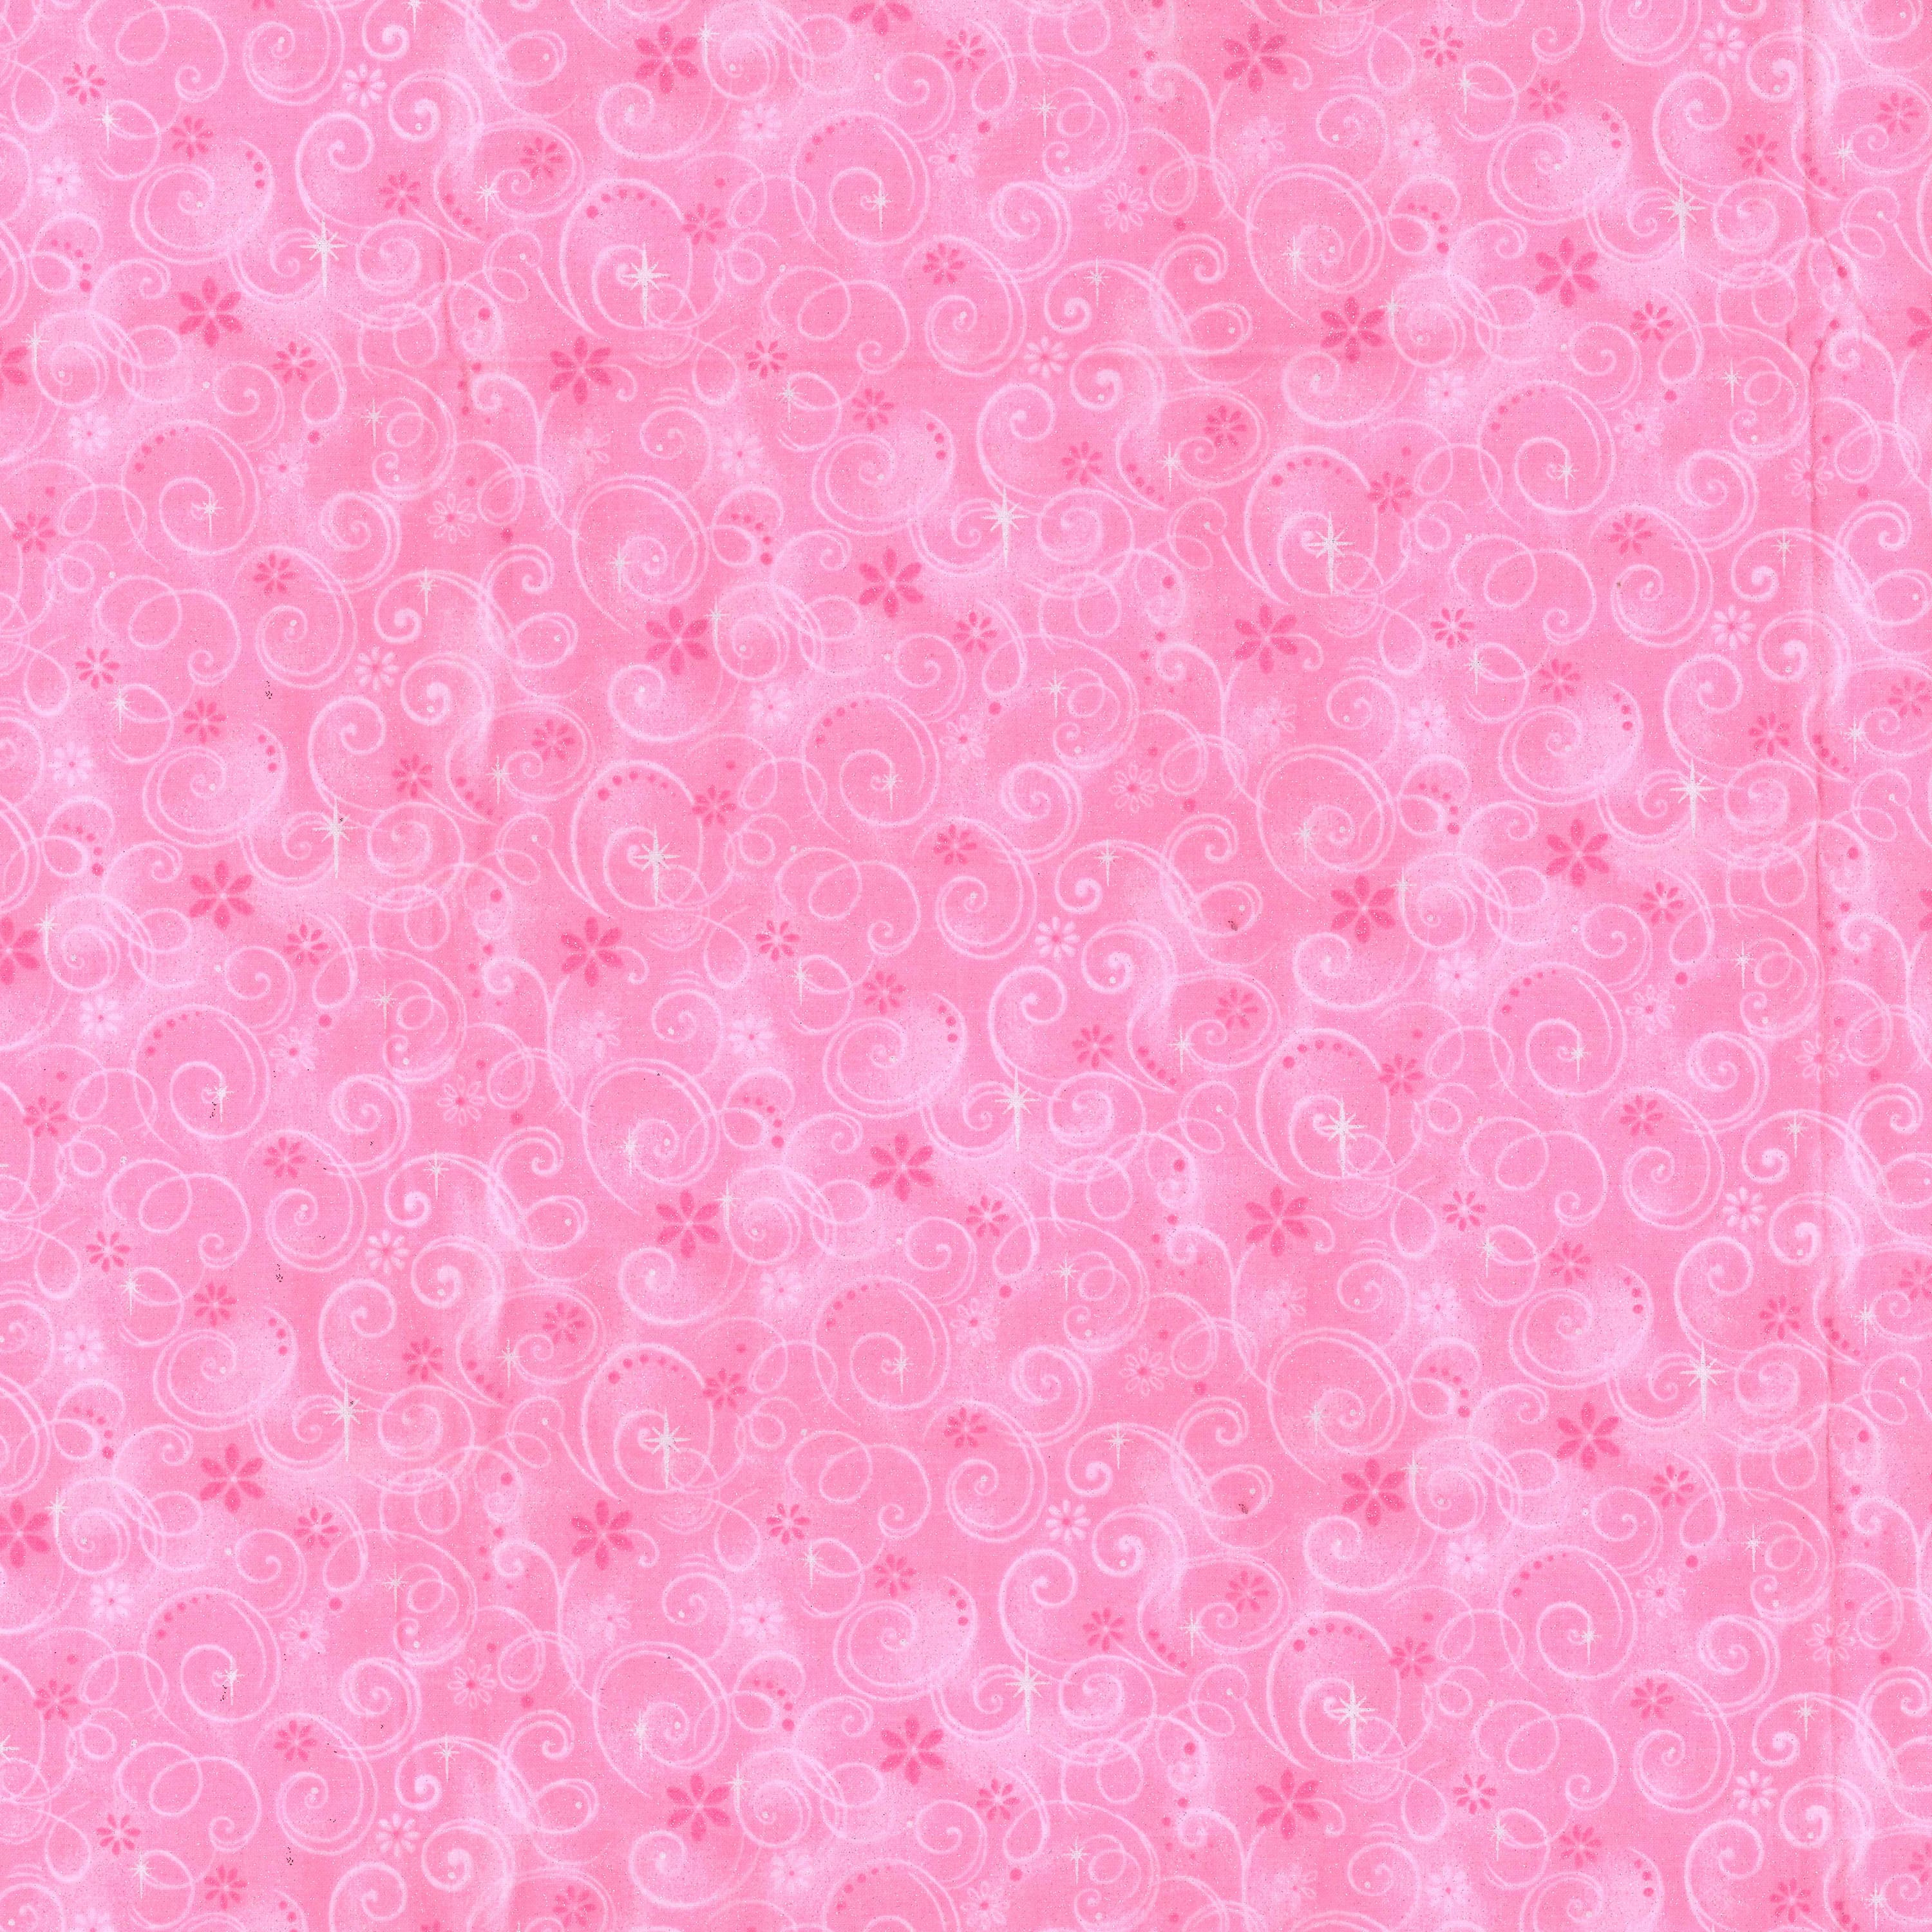 Pink Swirls Cotton Fabric